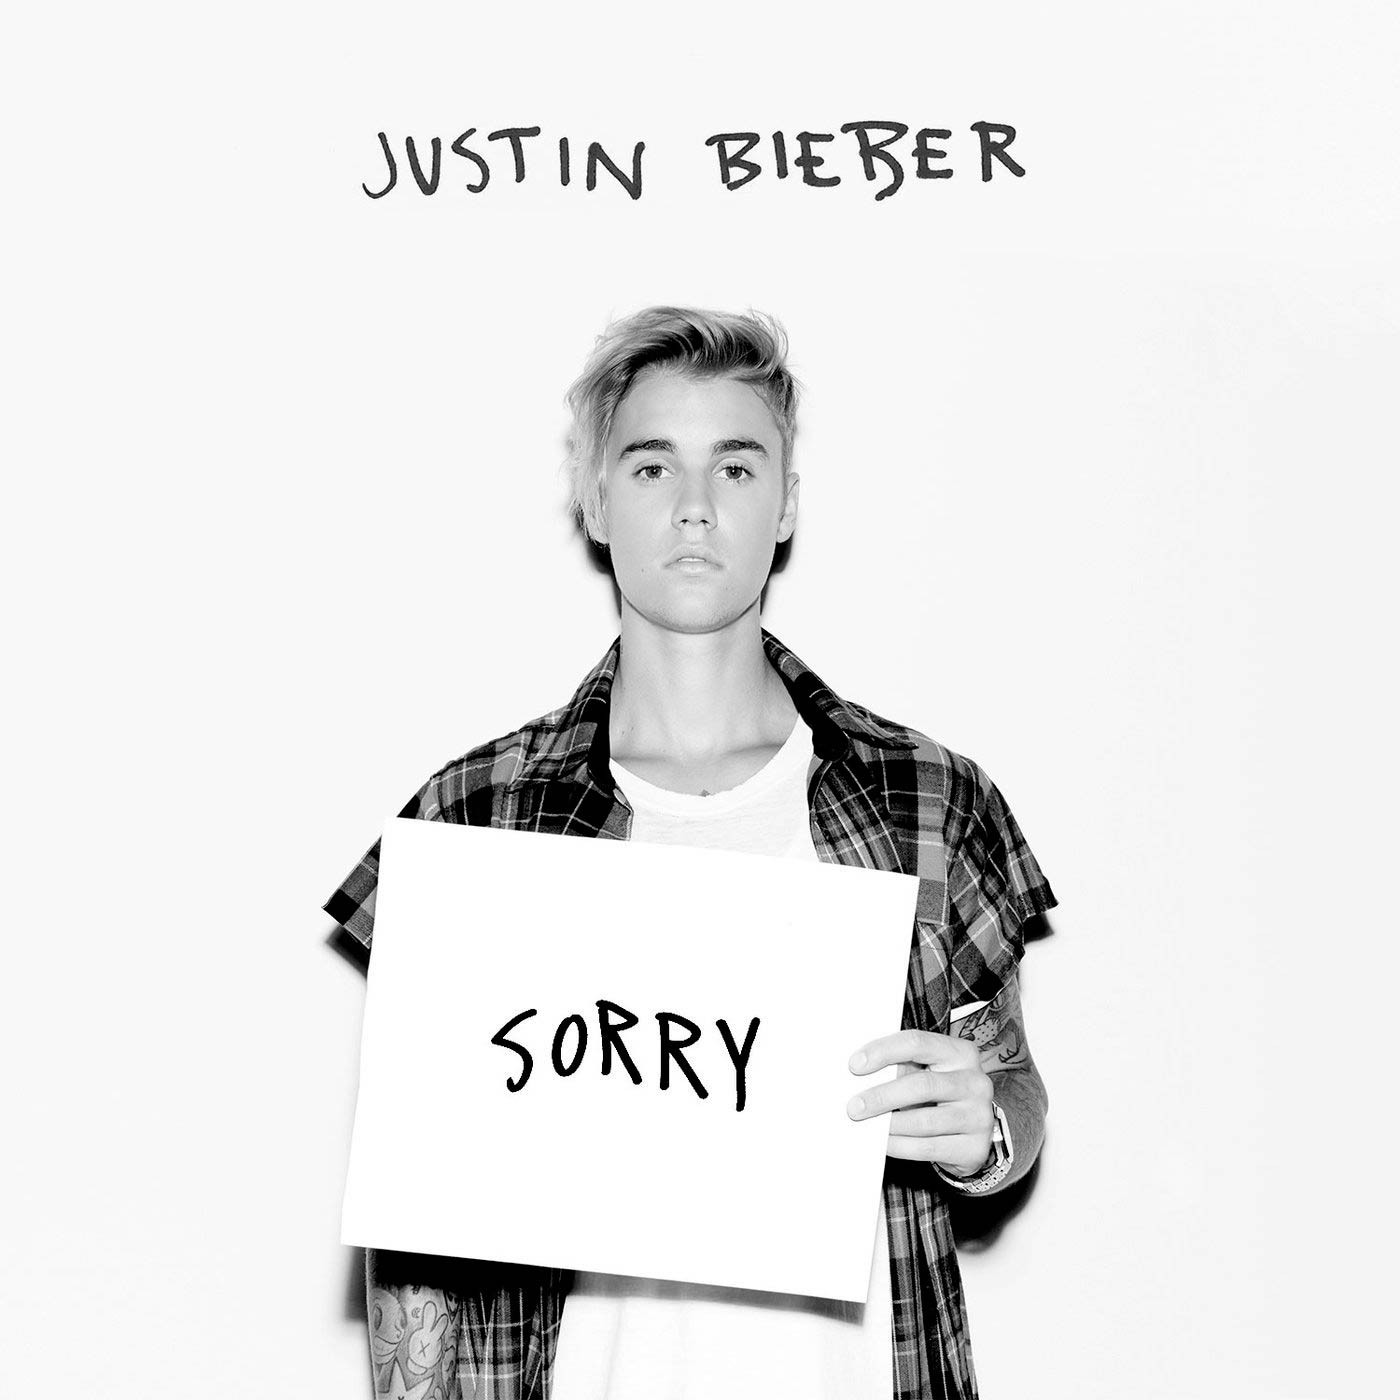 Justin Bieber: Sorry, la portada de la canción